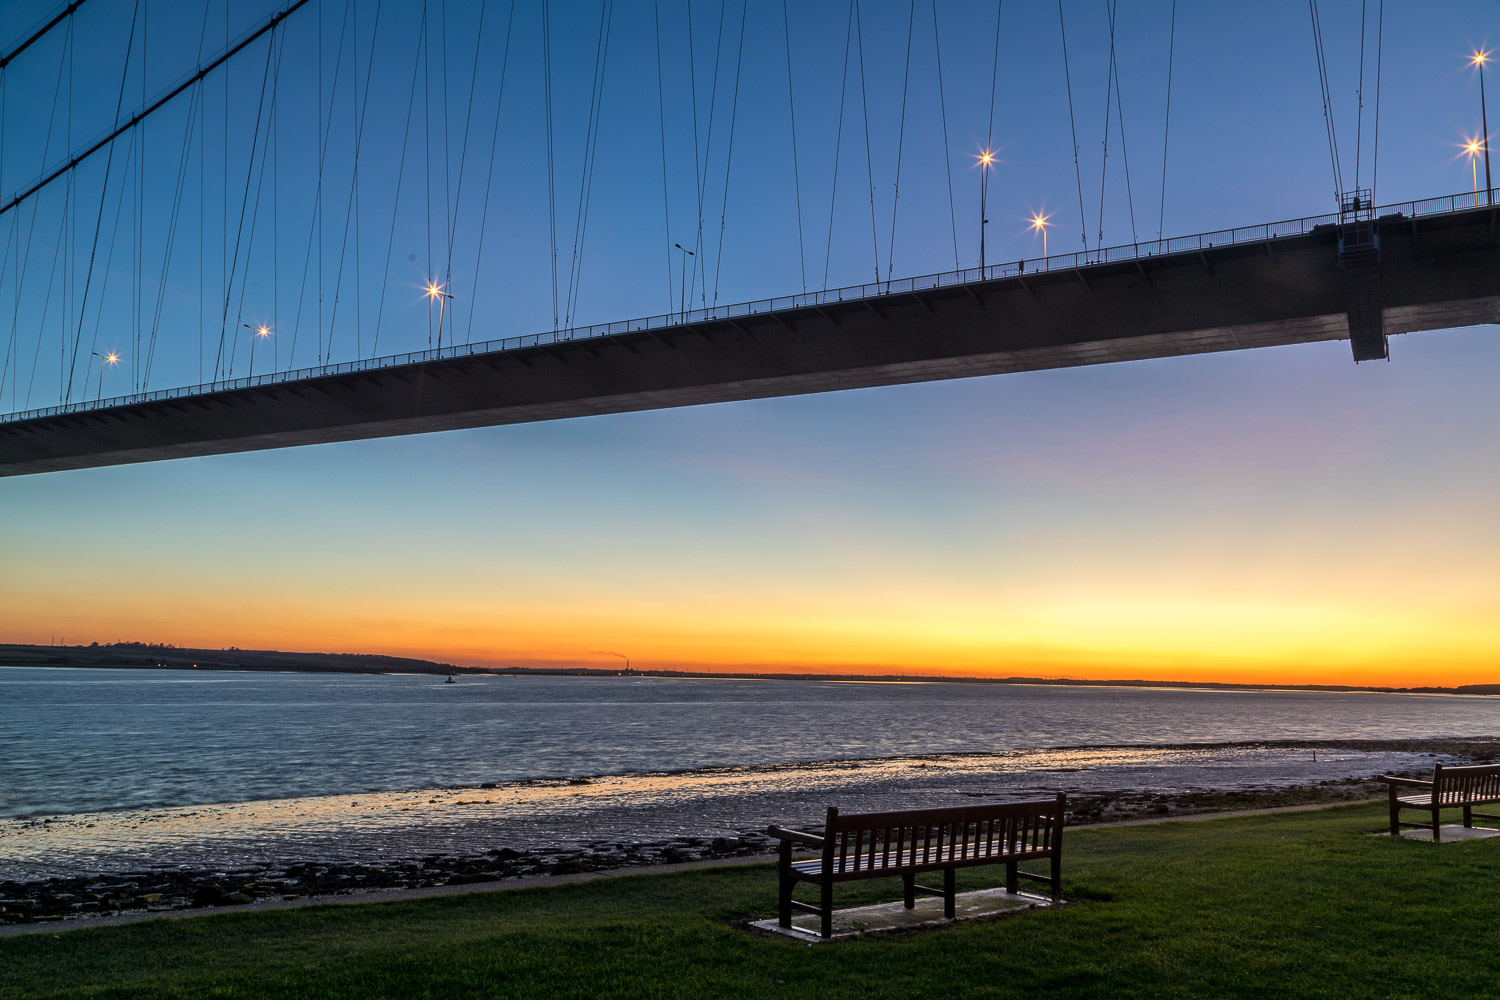 Humber Bridge sunset